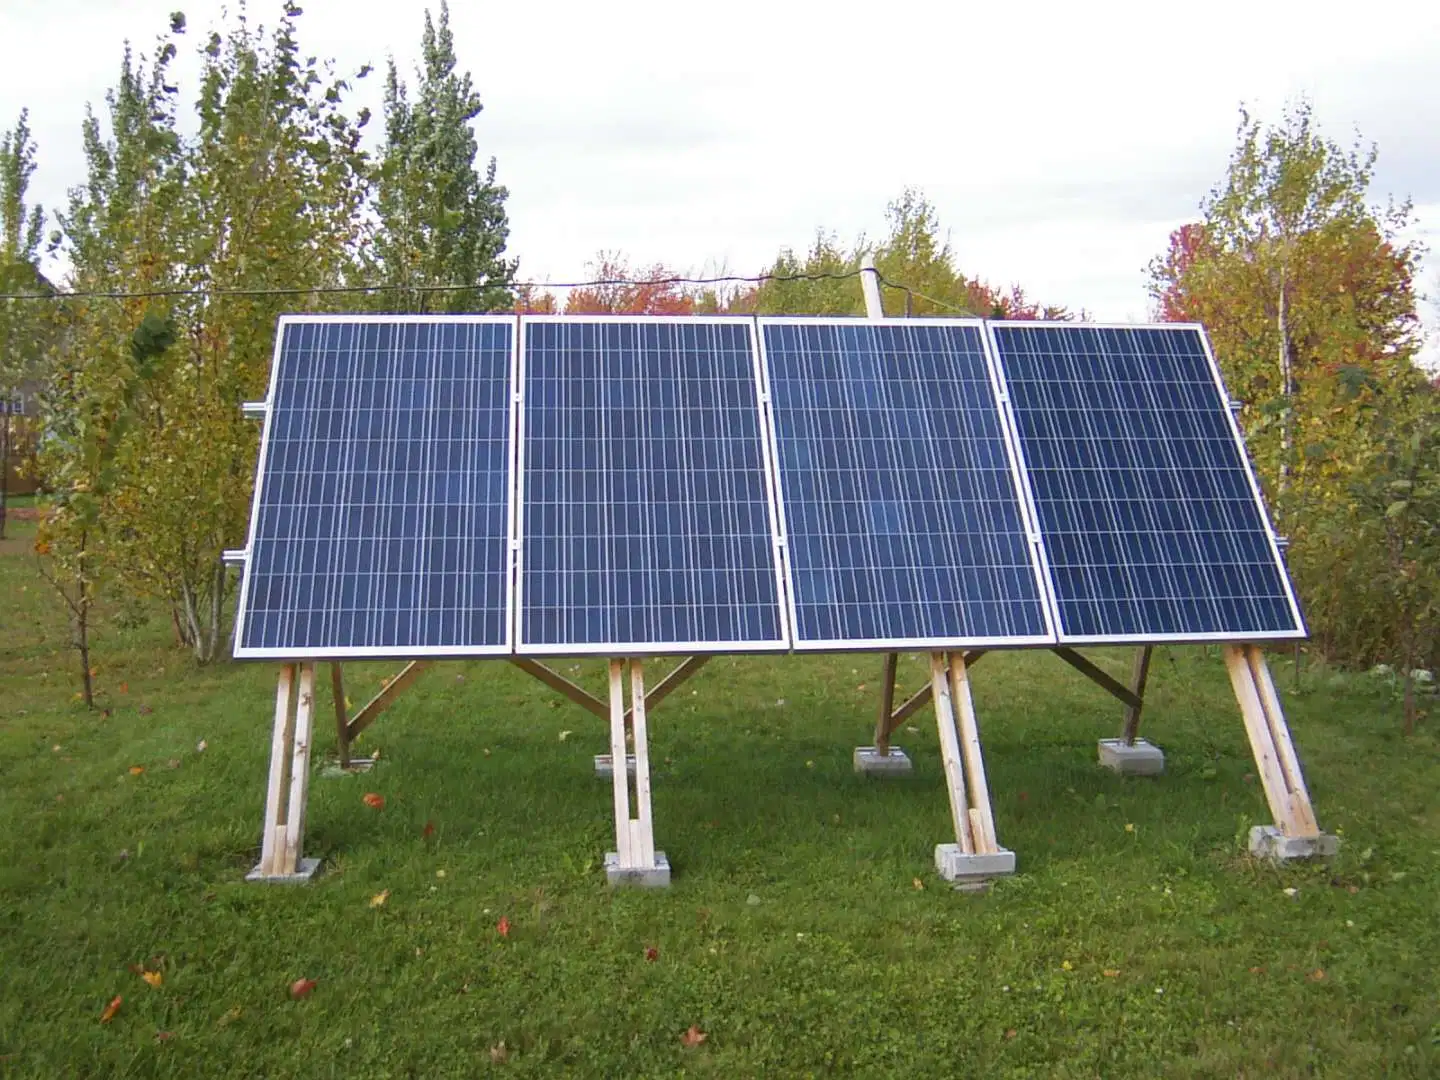 1000W 2000W 3000W SYSTÈME SOLAIRE, PANNEAU SOLAIRE Kits pour une utilisation domestique, kits d'énergie solaire